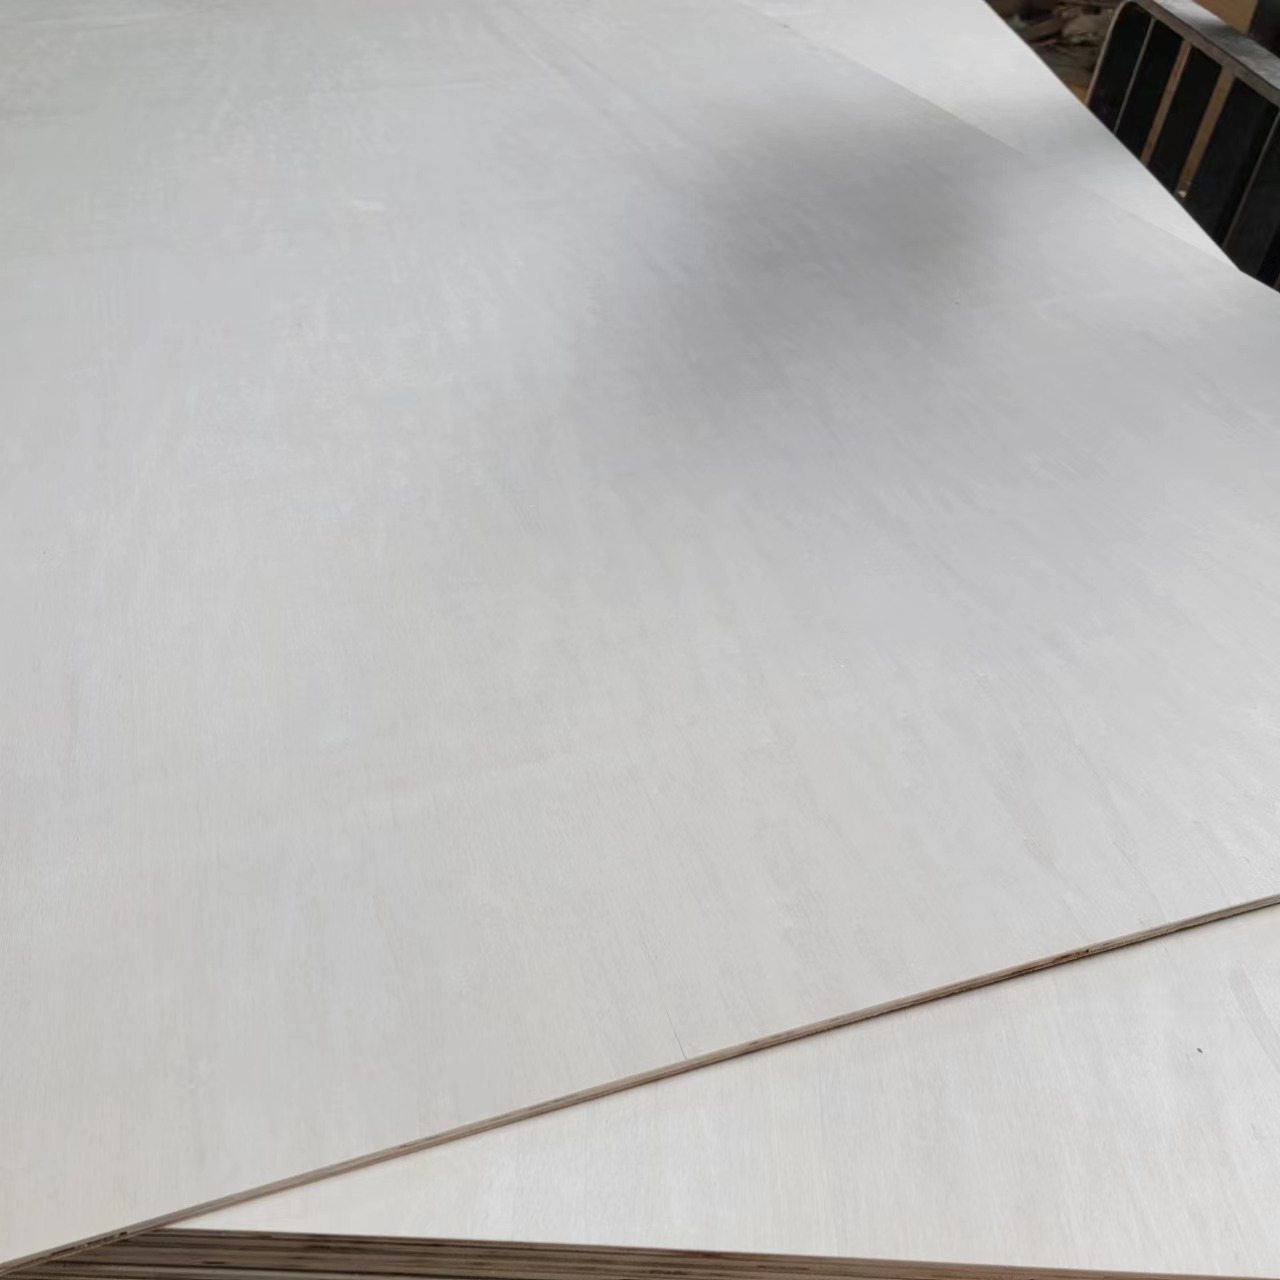 9mm二次成型胶合板漂白杨木纯白面包装板贴面板托盘板可出口